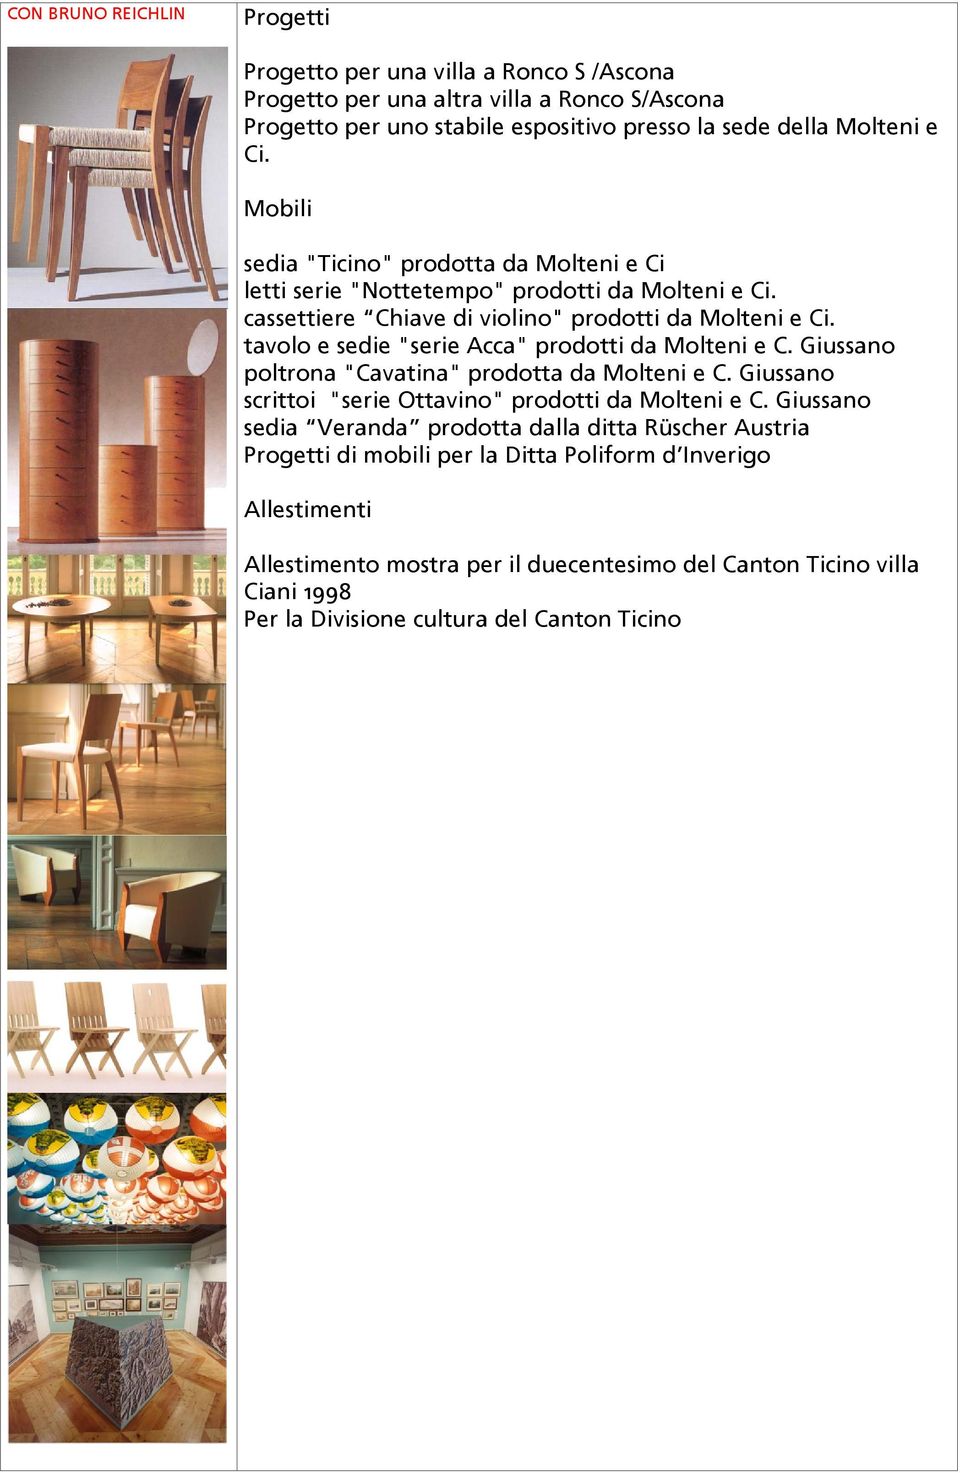 tavolo e sedie "serie Acca" prodotti da Molteni e C. Giussano poltrona "Cavatina" prodotta da Molteni e C. Giussano scrittoi "serie Ottavino" prodotti da Molteni e C.